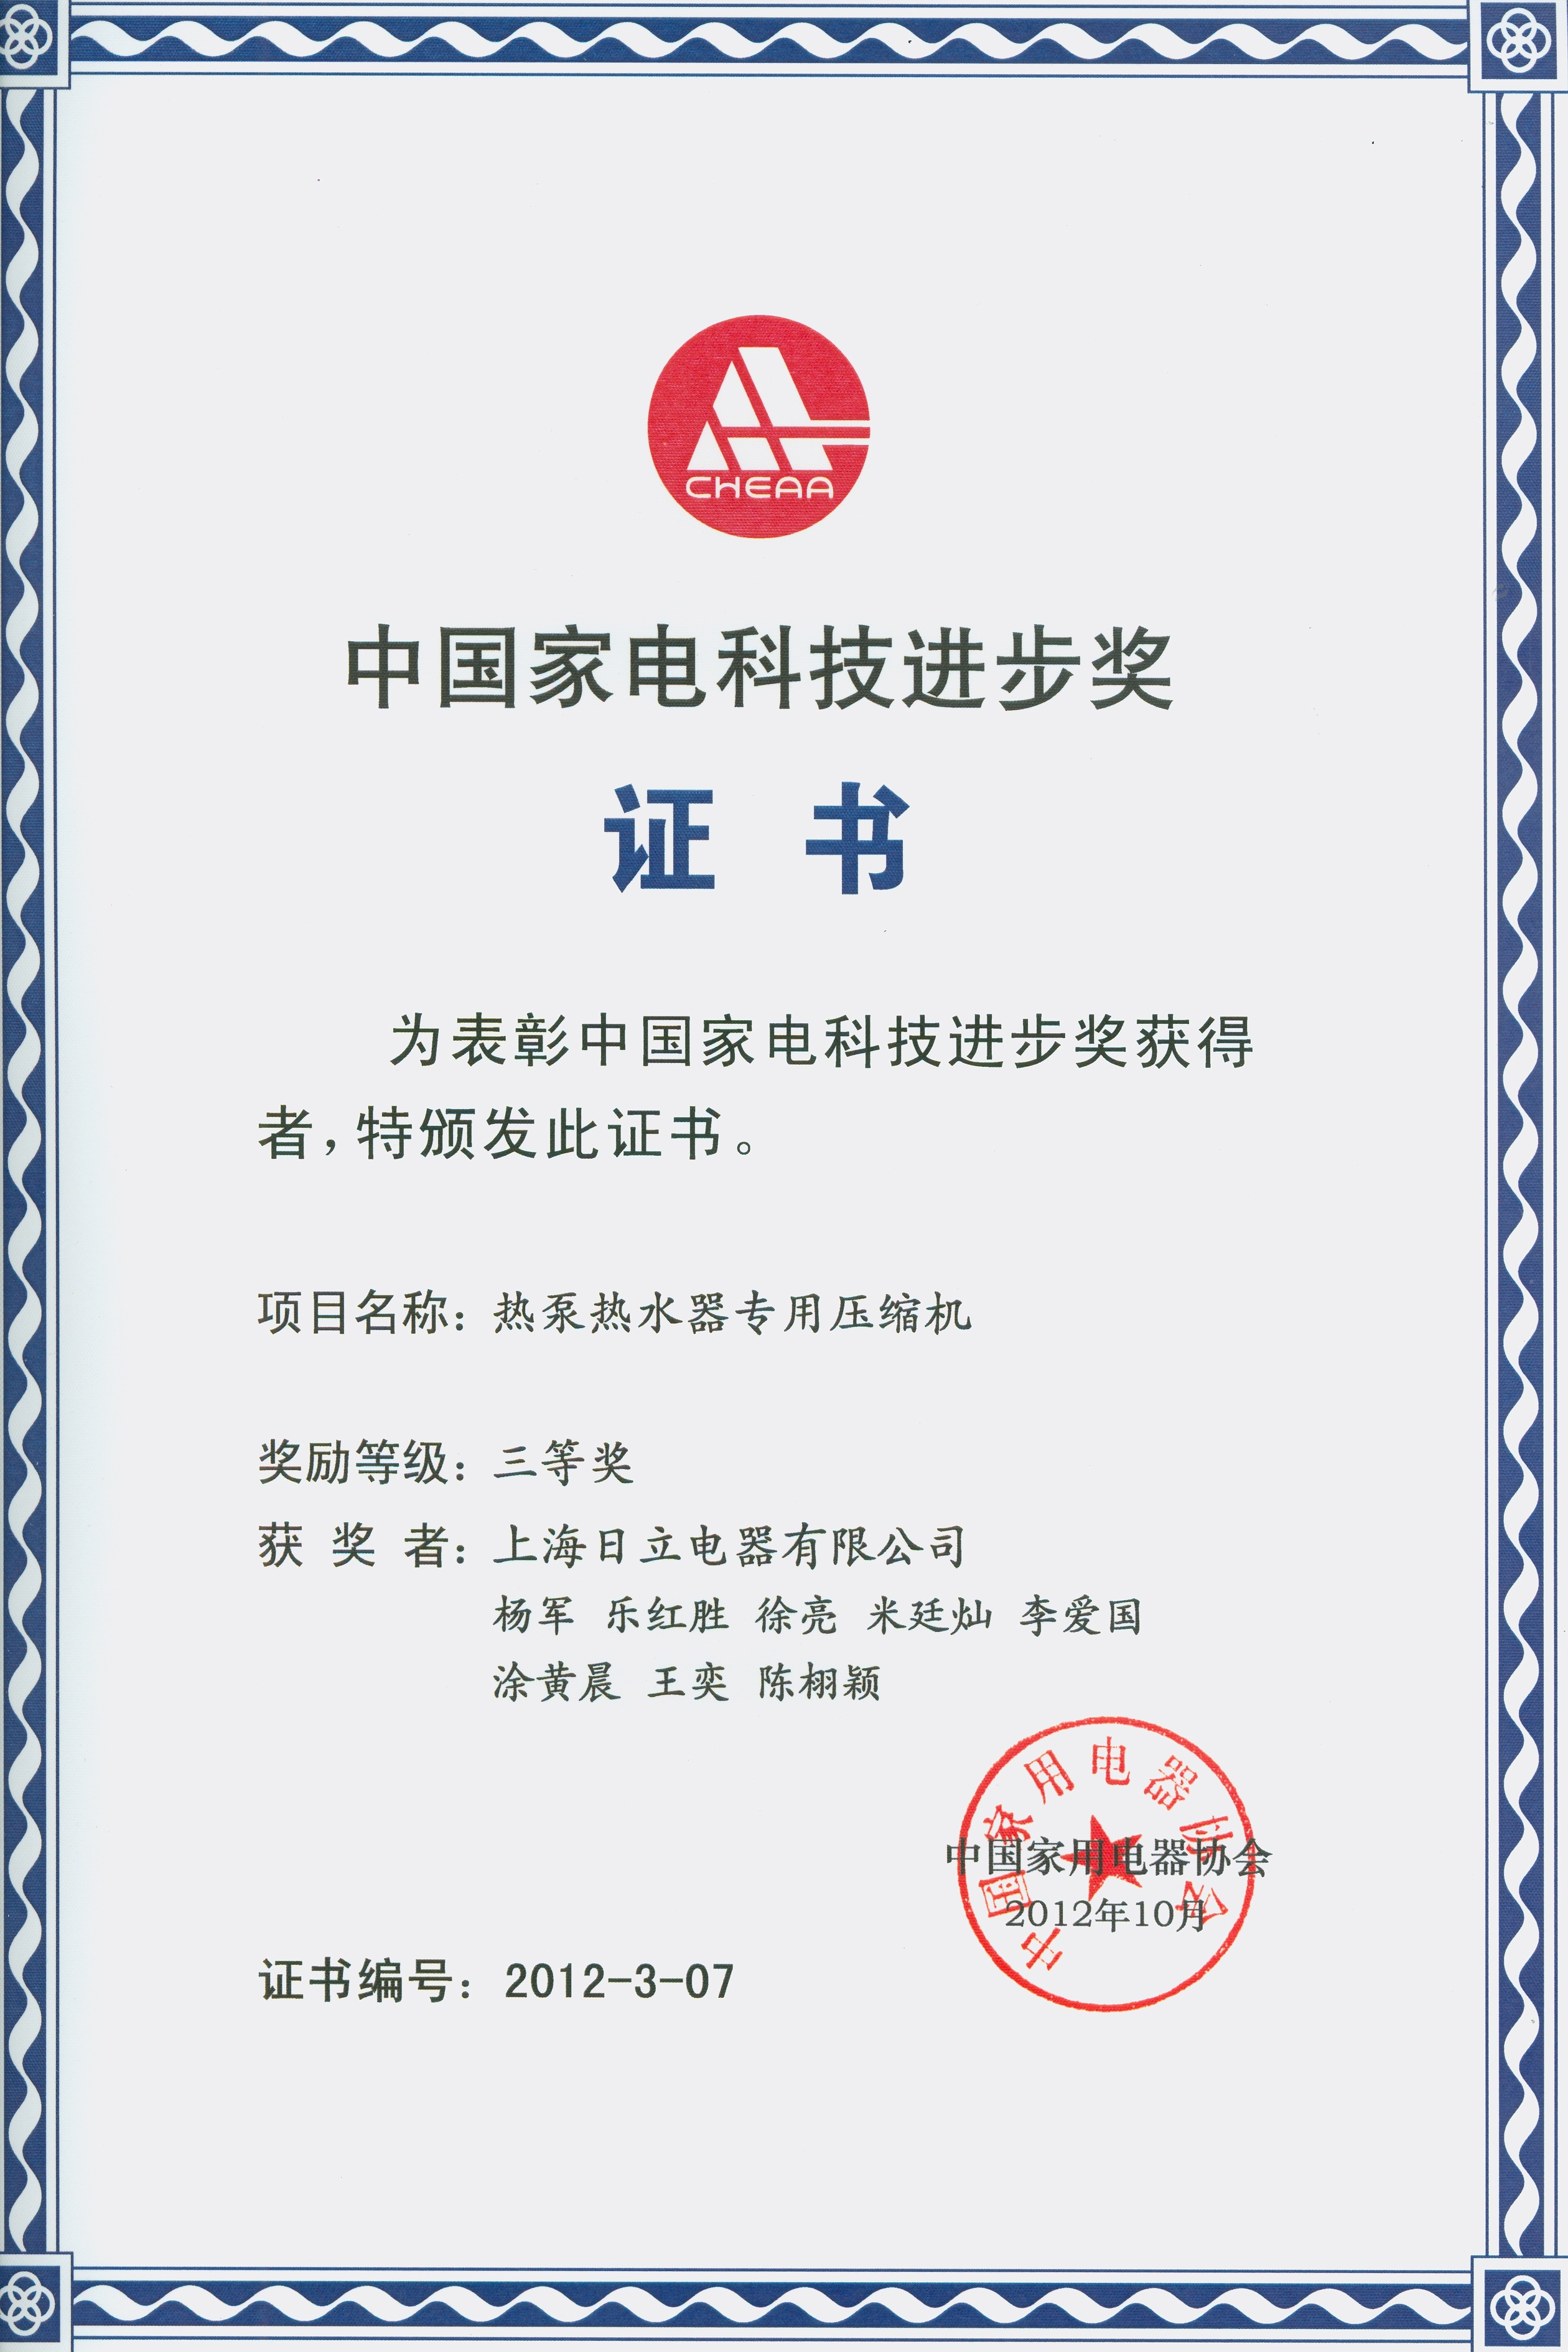 上海日立产品分获“中国家电科技进步奖”二、三等奖